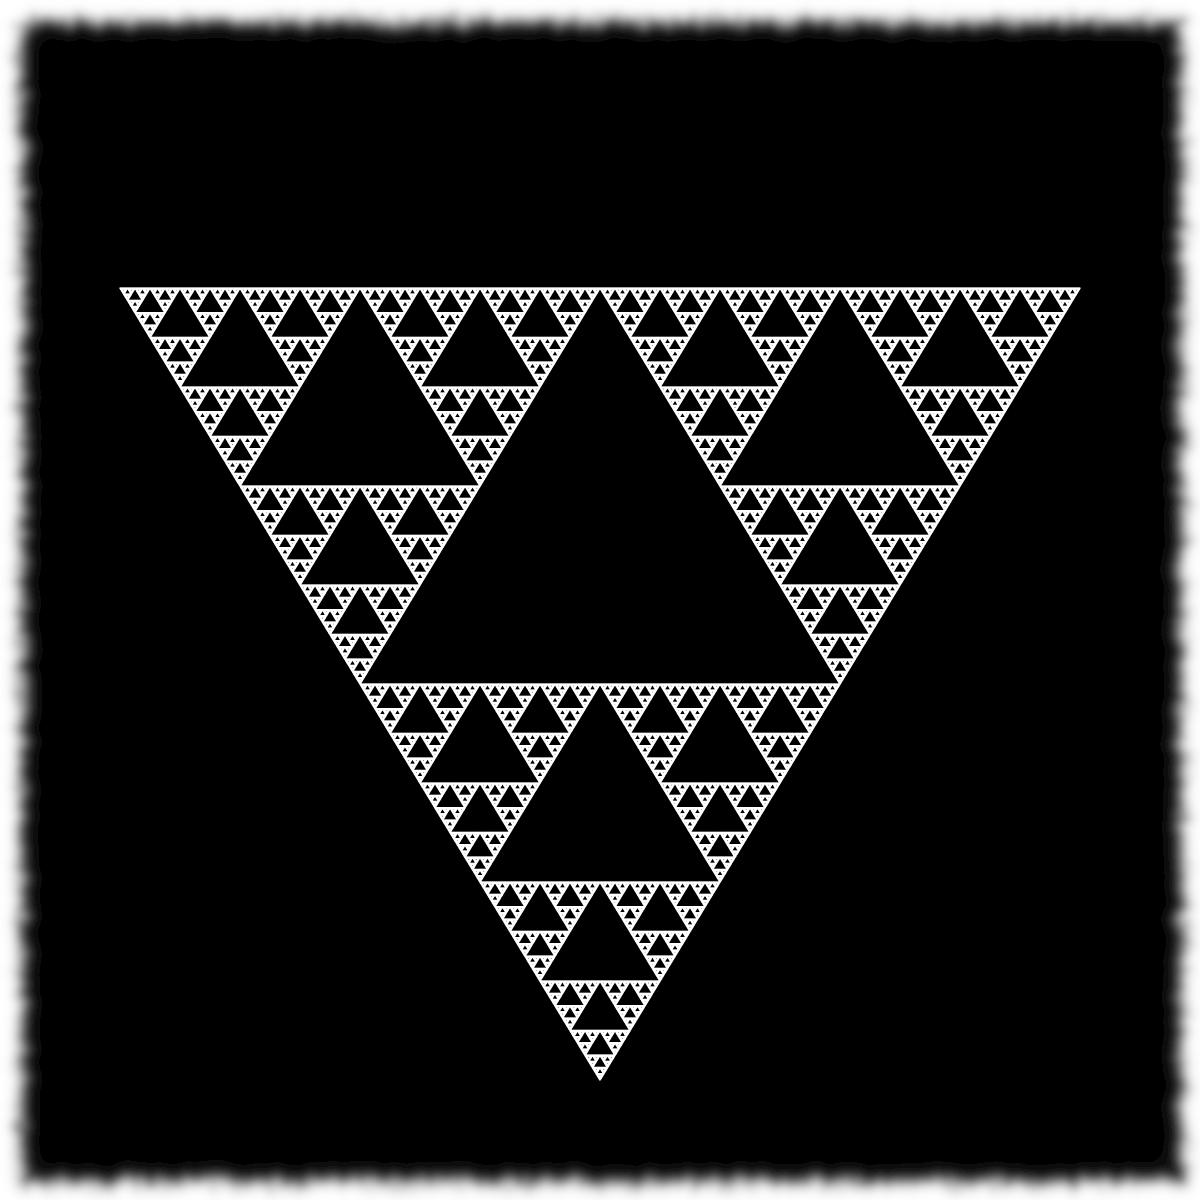 Triangular Fractal Black & White